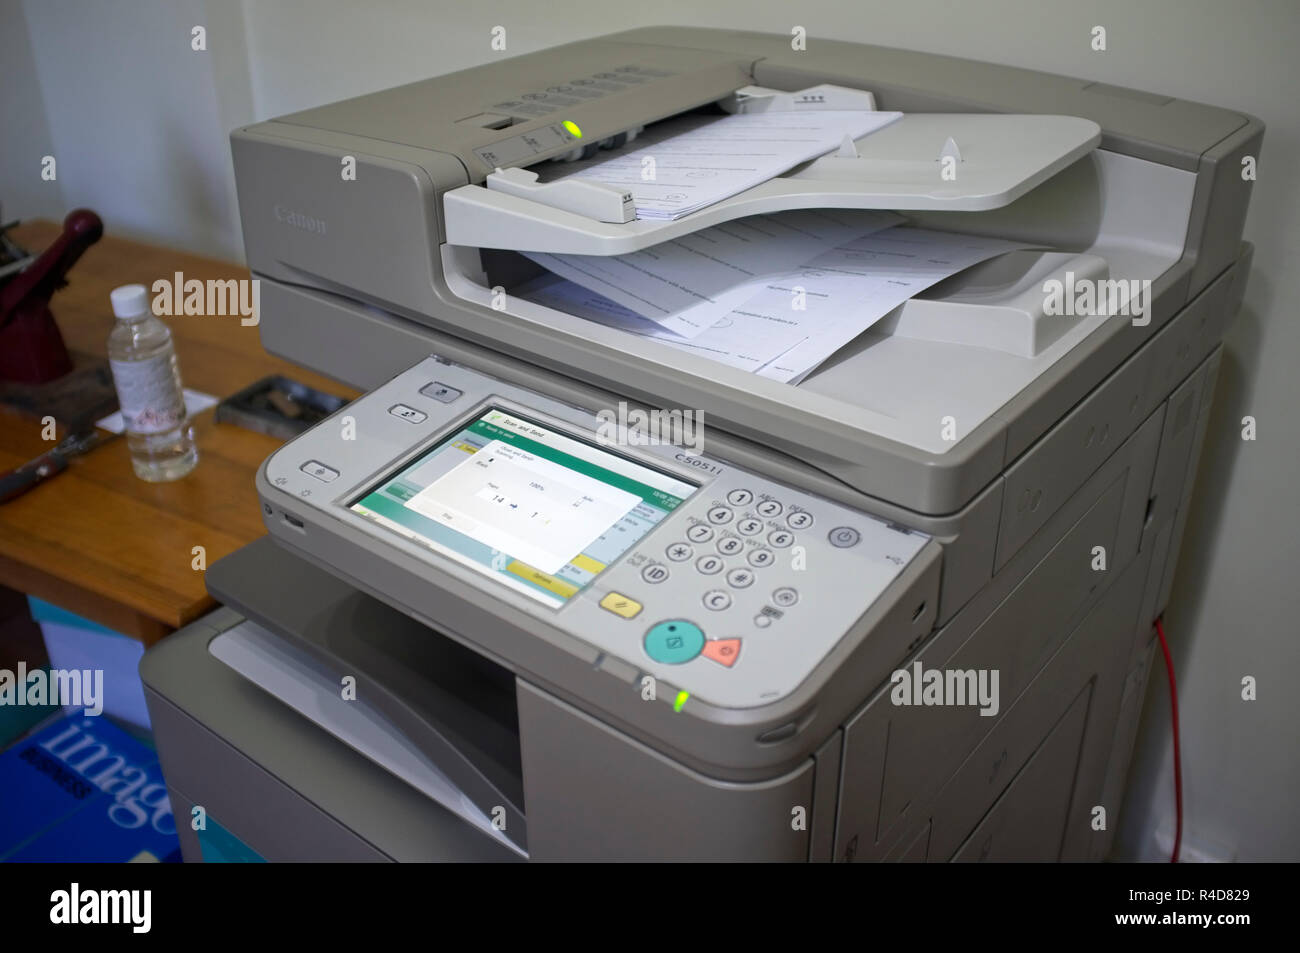 Como Escanear Fotos y Documentos con Cualquier Impresora en